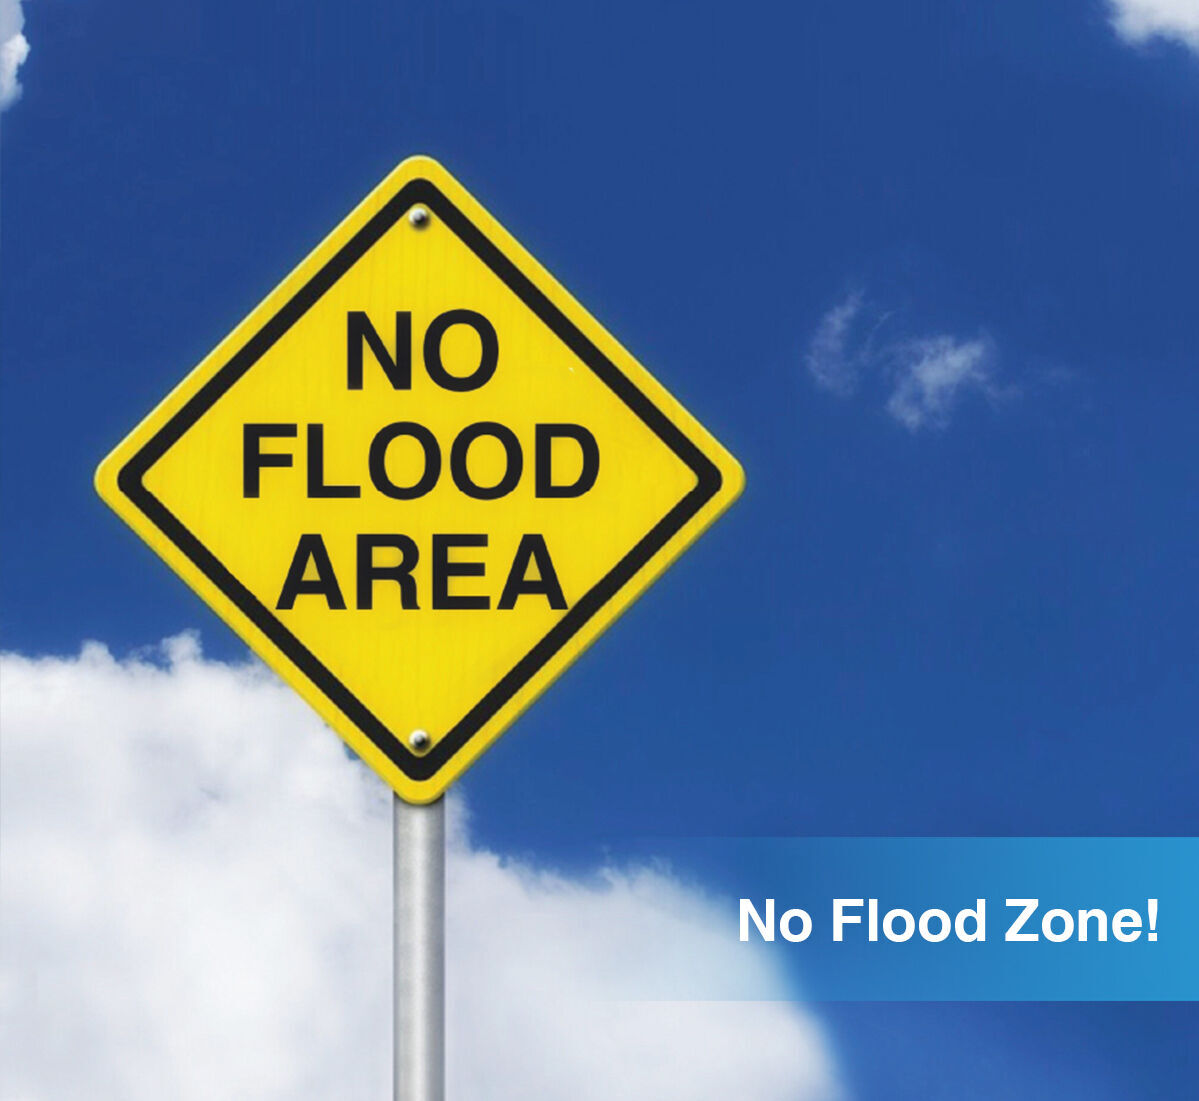 No Flood Zone!